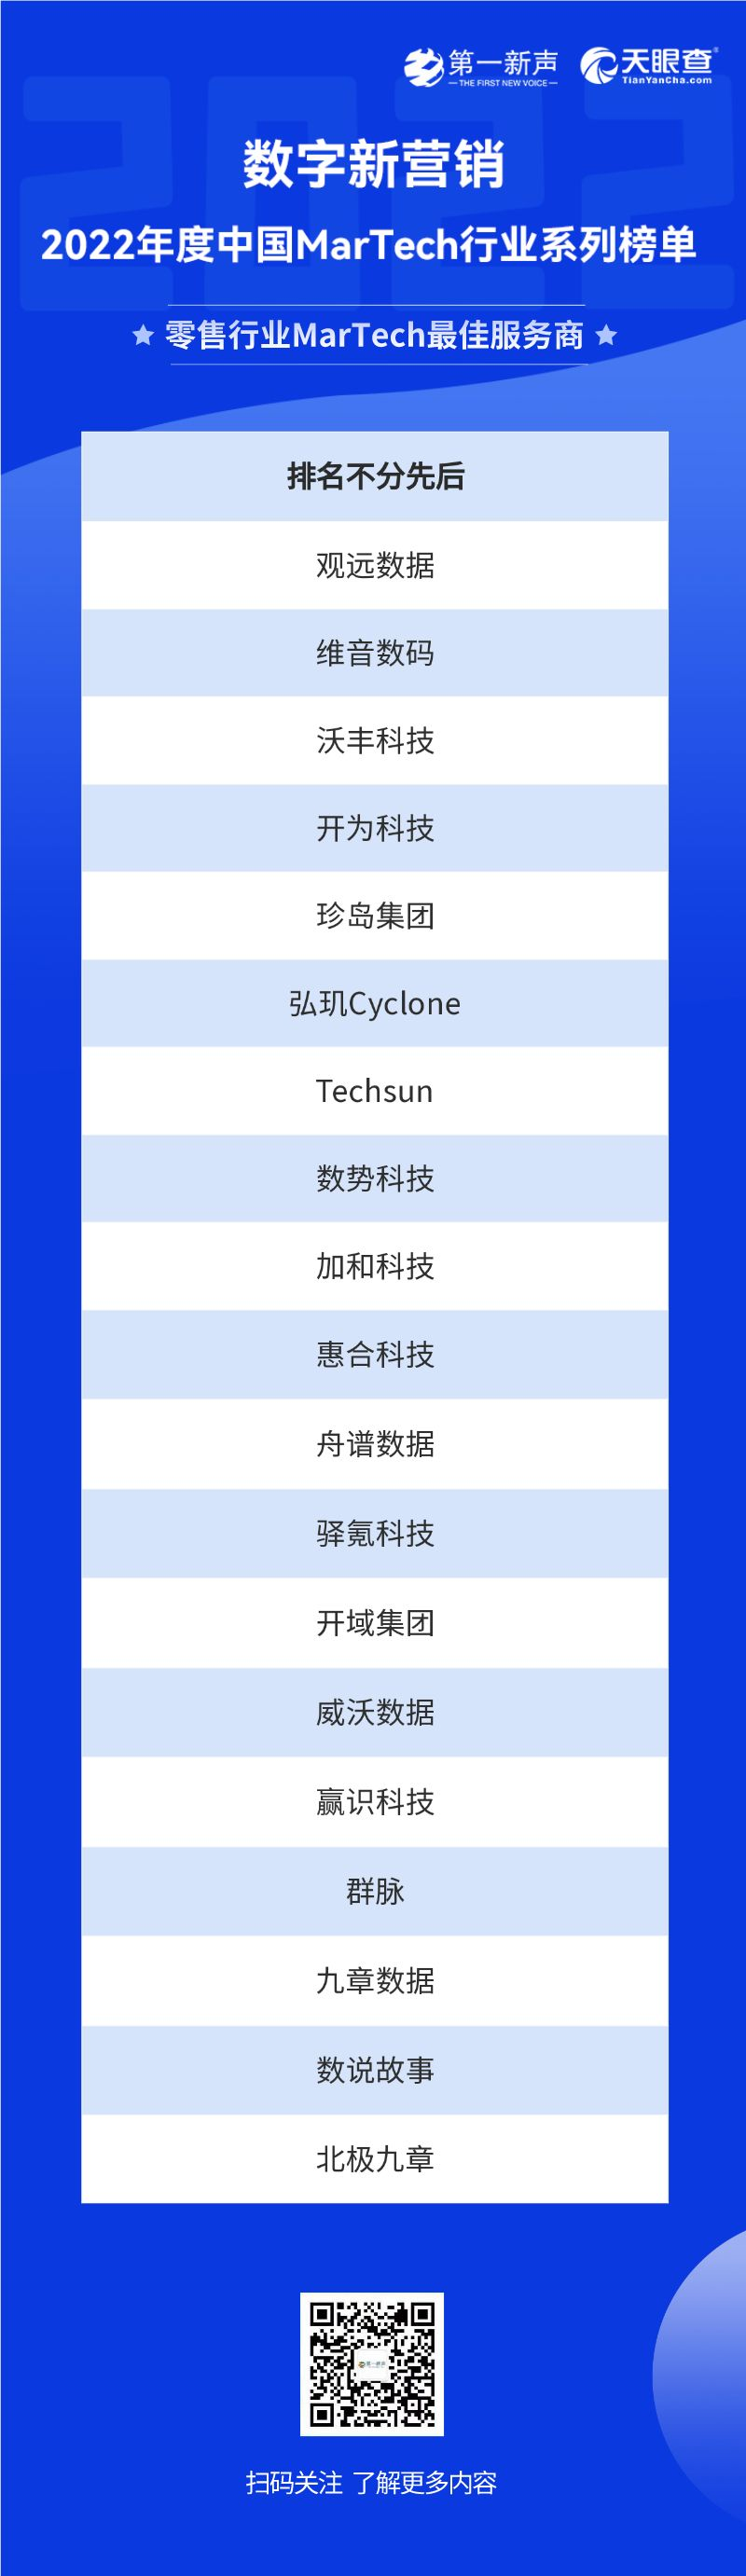 2022年度中国MarTech行业系列榜单正式发布，句子互动入选SCRM最佳服务商 第17张